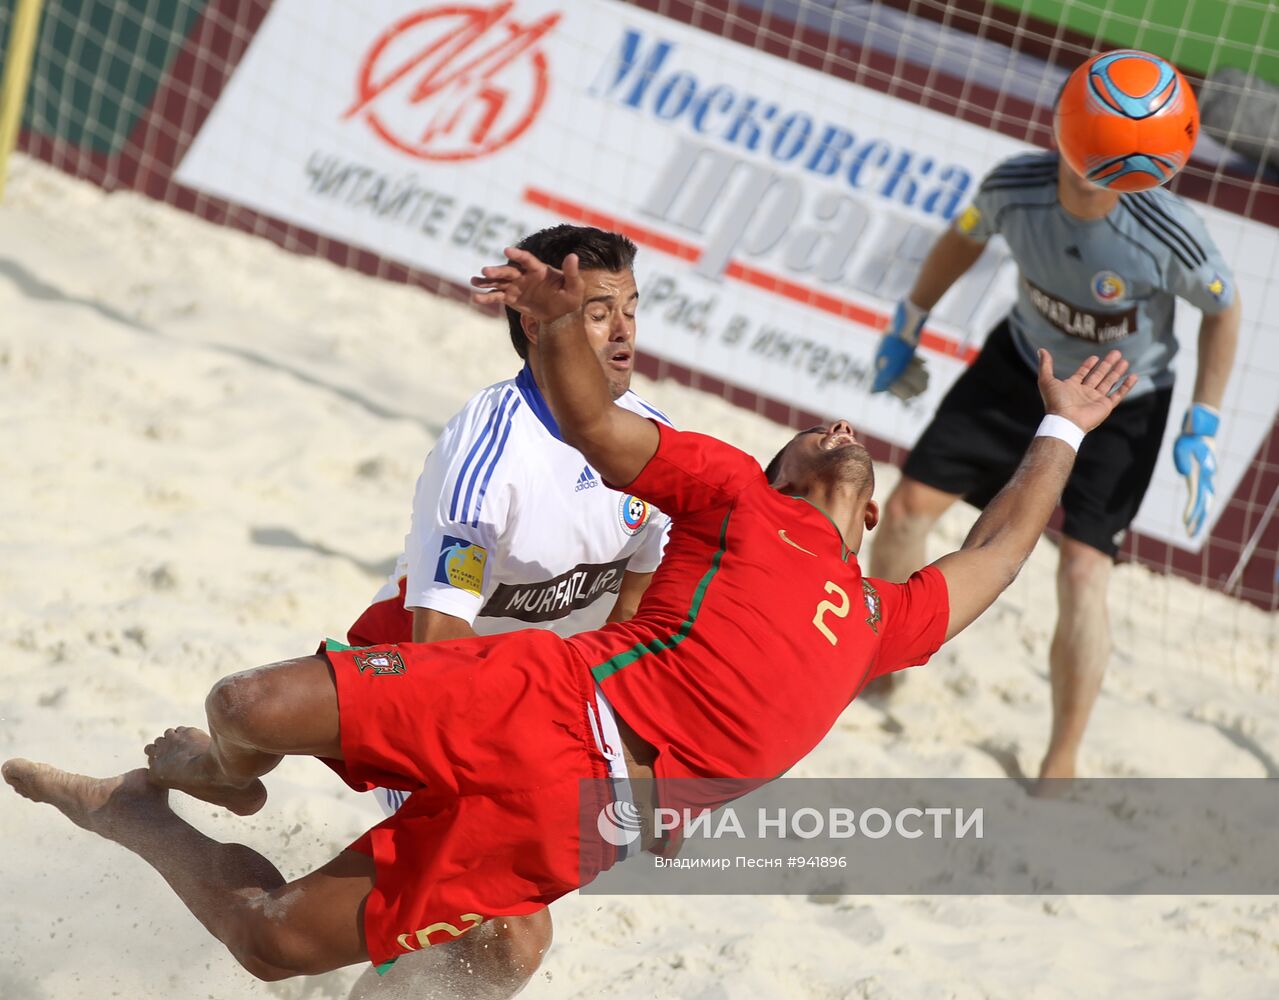 Пляжный футбол. Суперфинал Евролиги - 2011